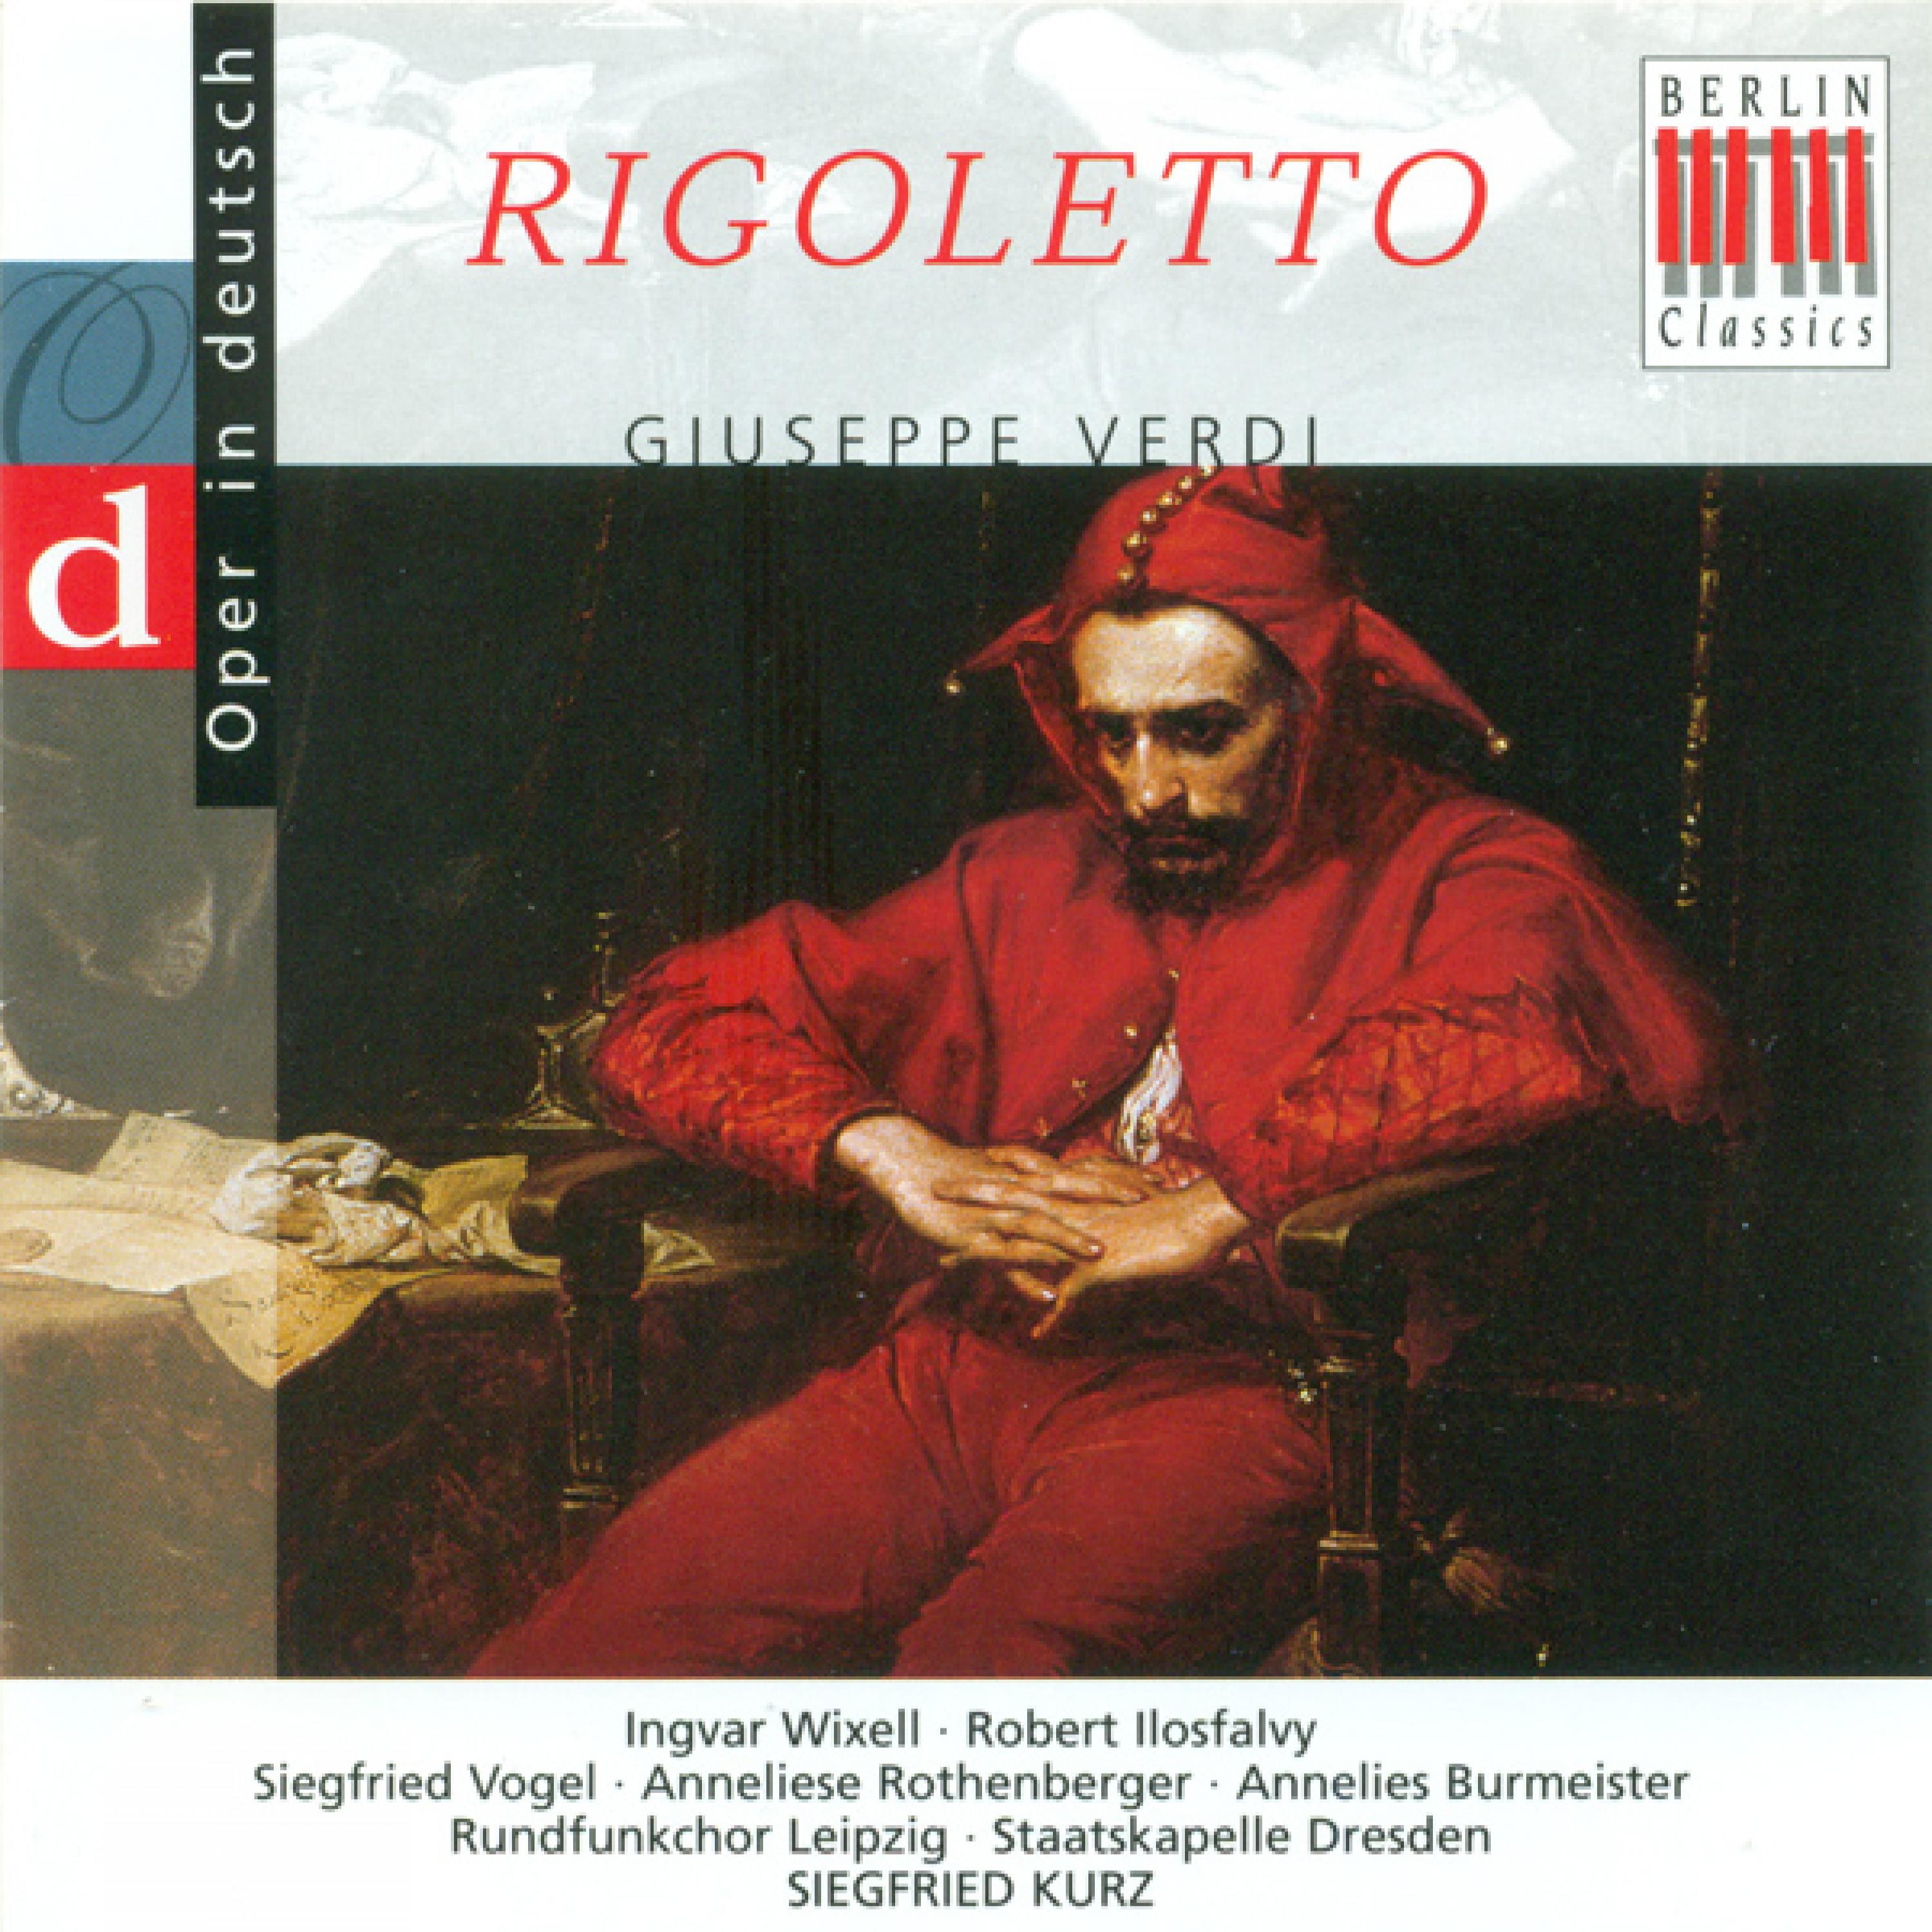 Rigoletto, Act I: "Leise, stille, wir schreiten zur Rache"